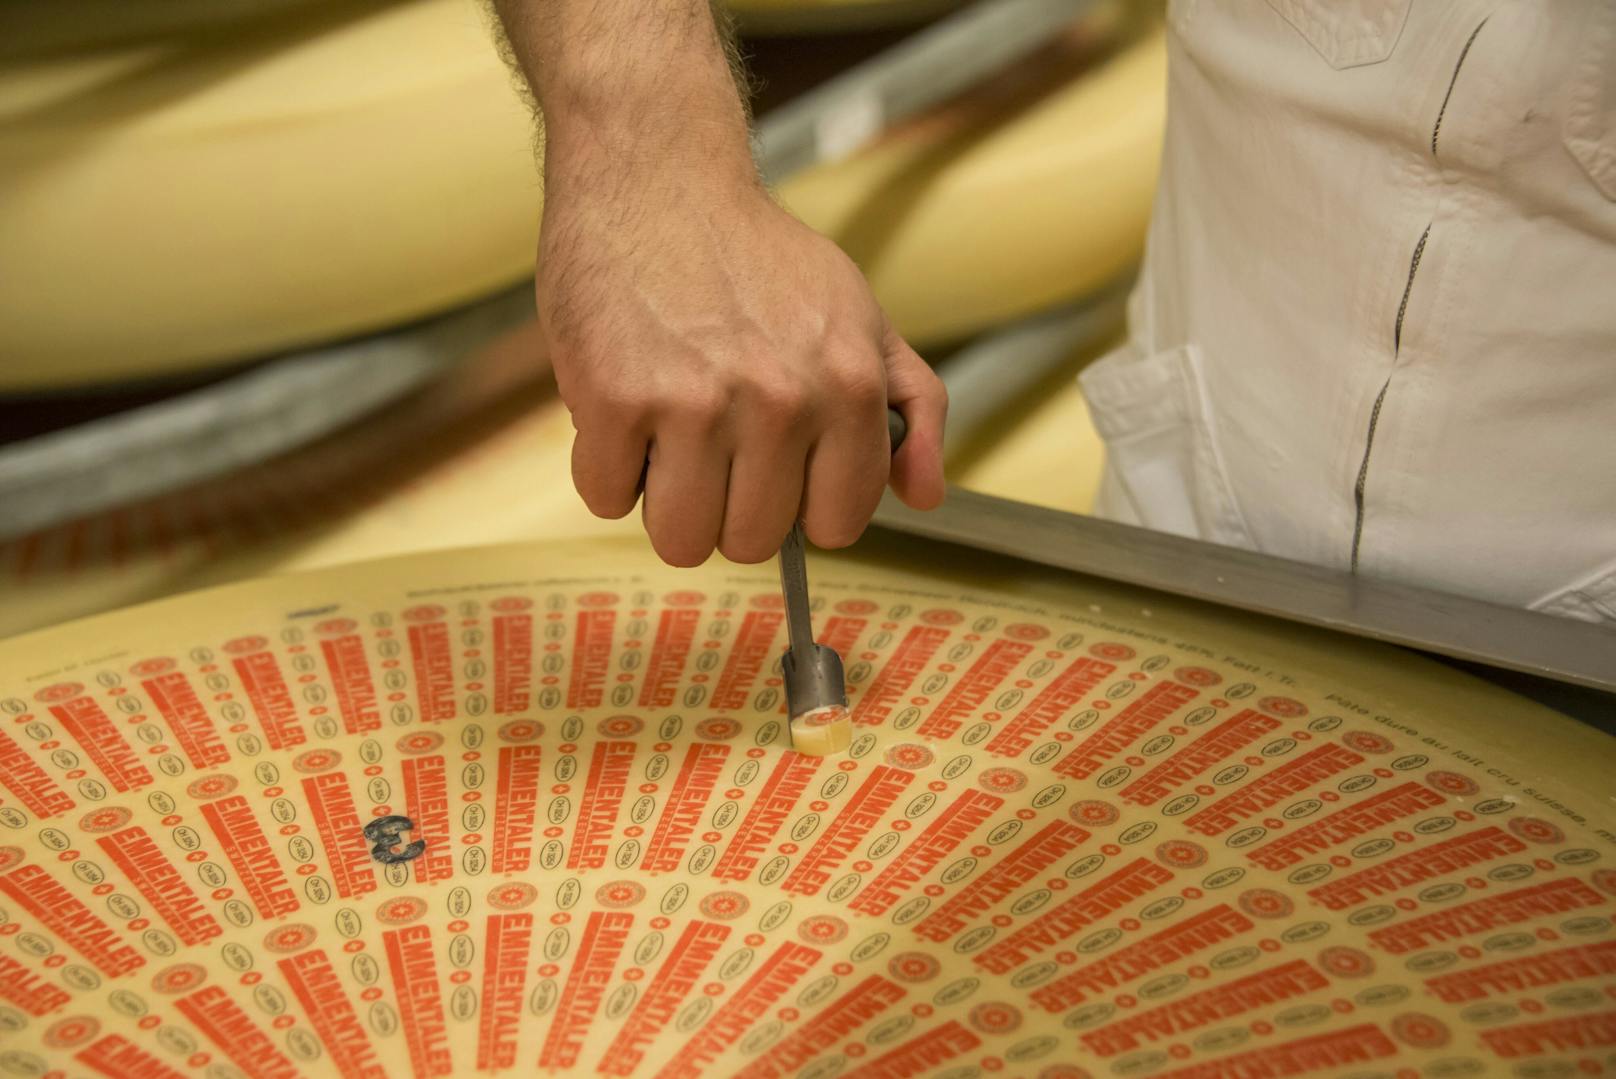 Ein Schweizer Käsemeister probiert ein Stück seines heranreifenden "Emmentaler". Archivbild